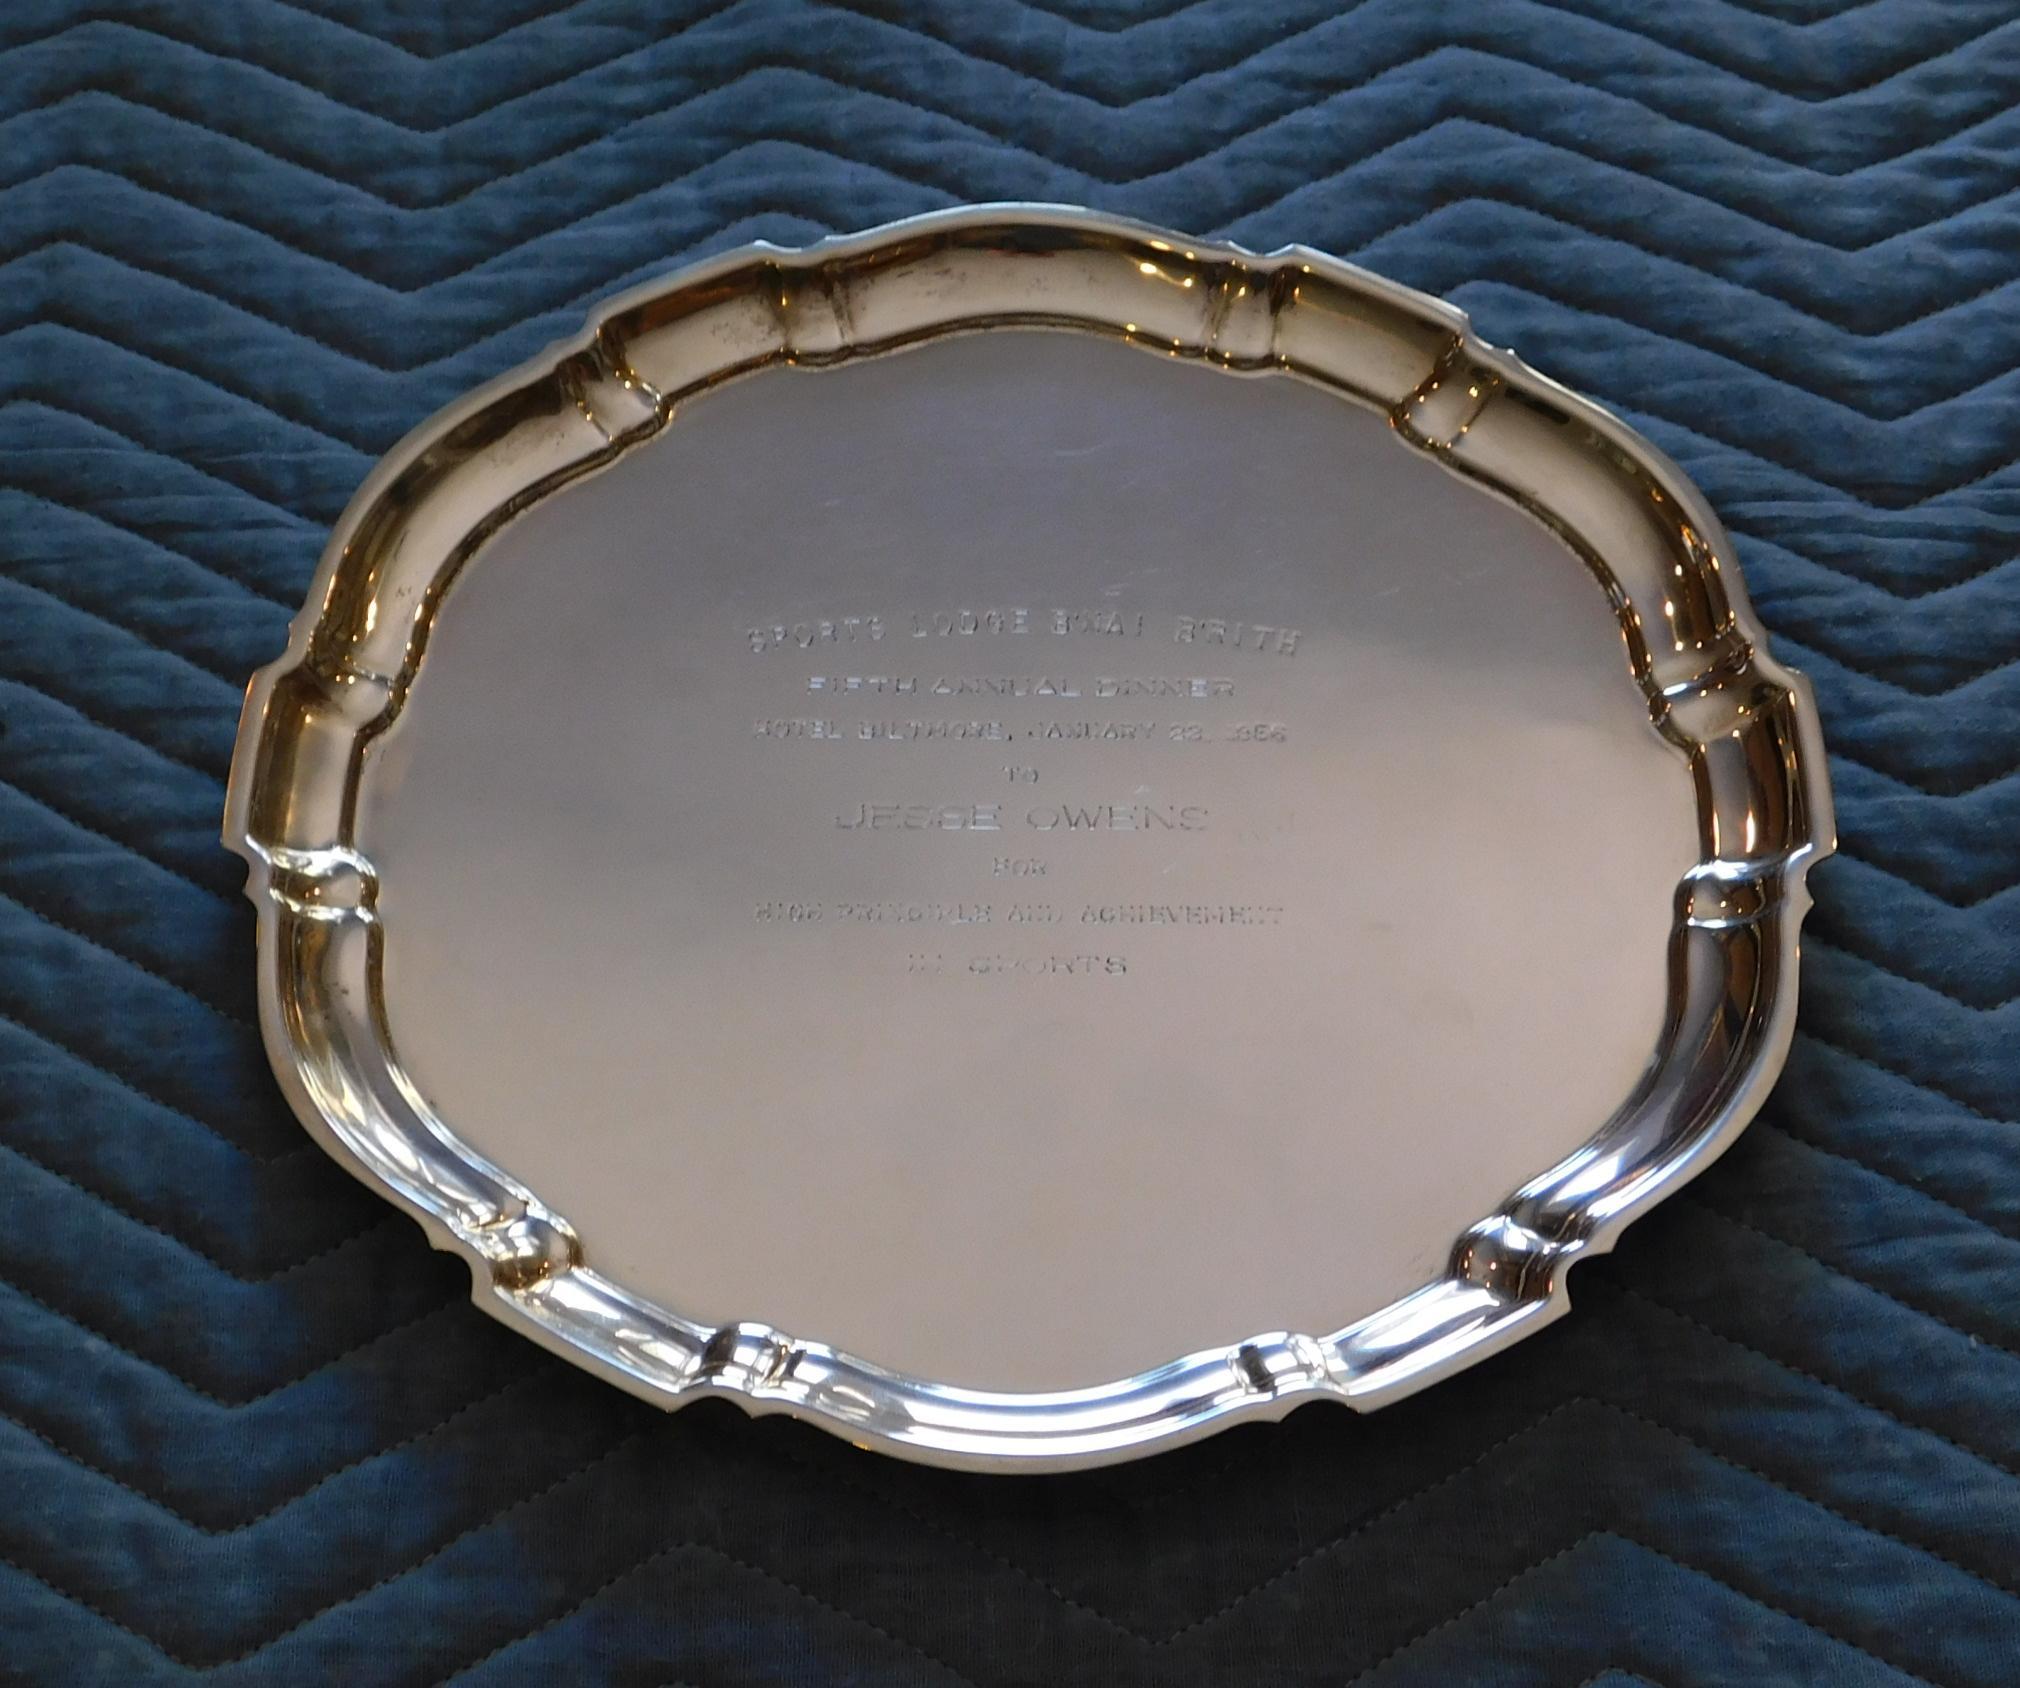 Ein Chippendale-Tablett aus Sterlingsilber von Poole. 
Das runde Tablett hat einen geformten und segmentierten Rand mit einer Aufschrift in der Mitte. 
Der Vermerk lautet: 